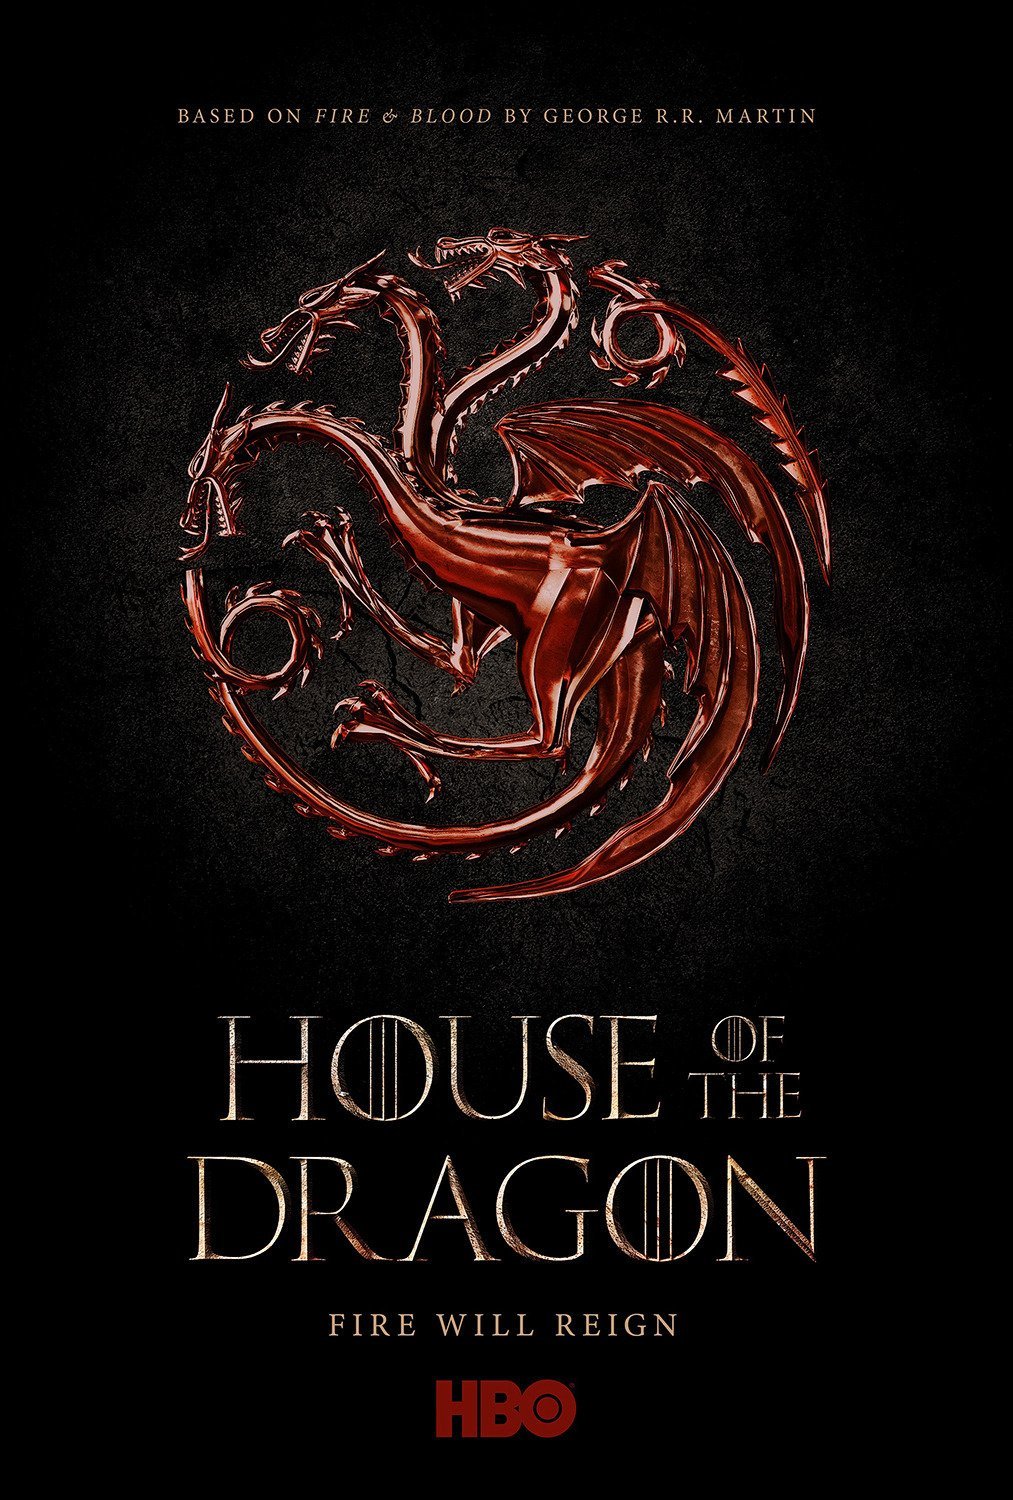 House of The Dragon estreia em 2022